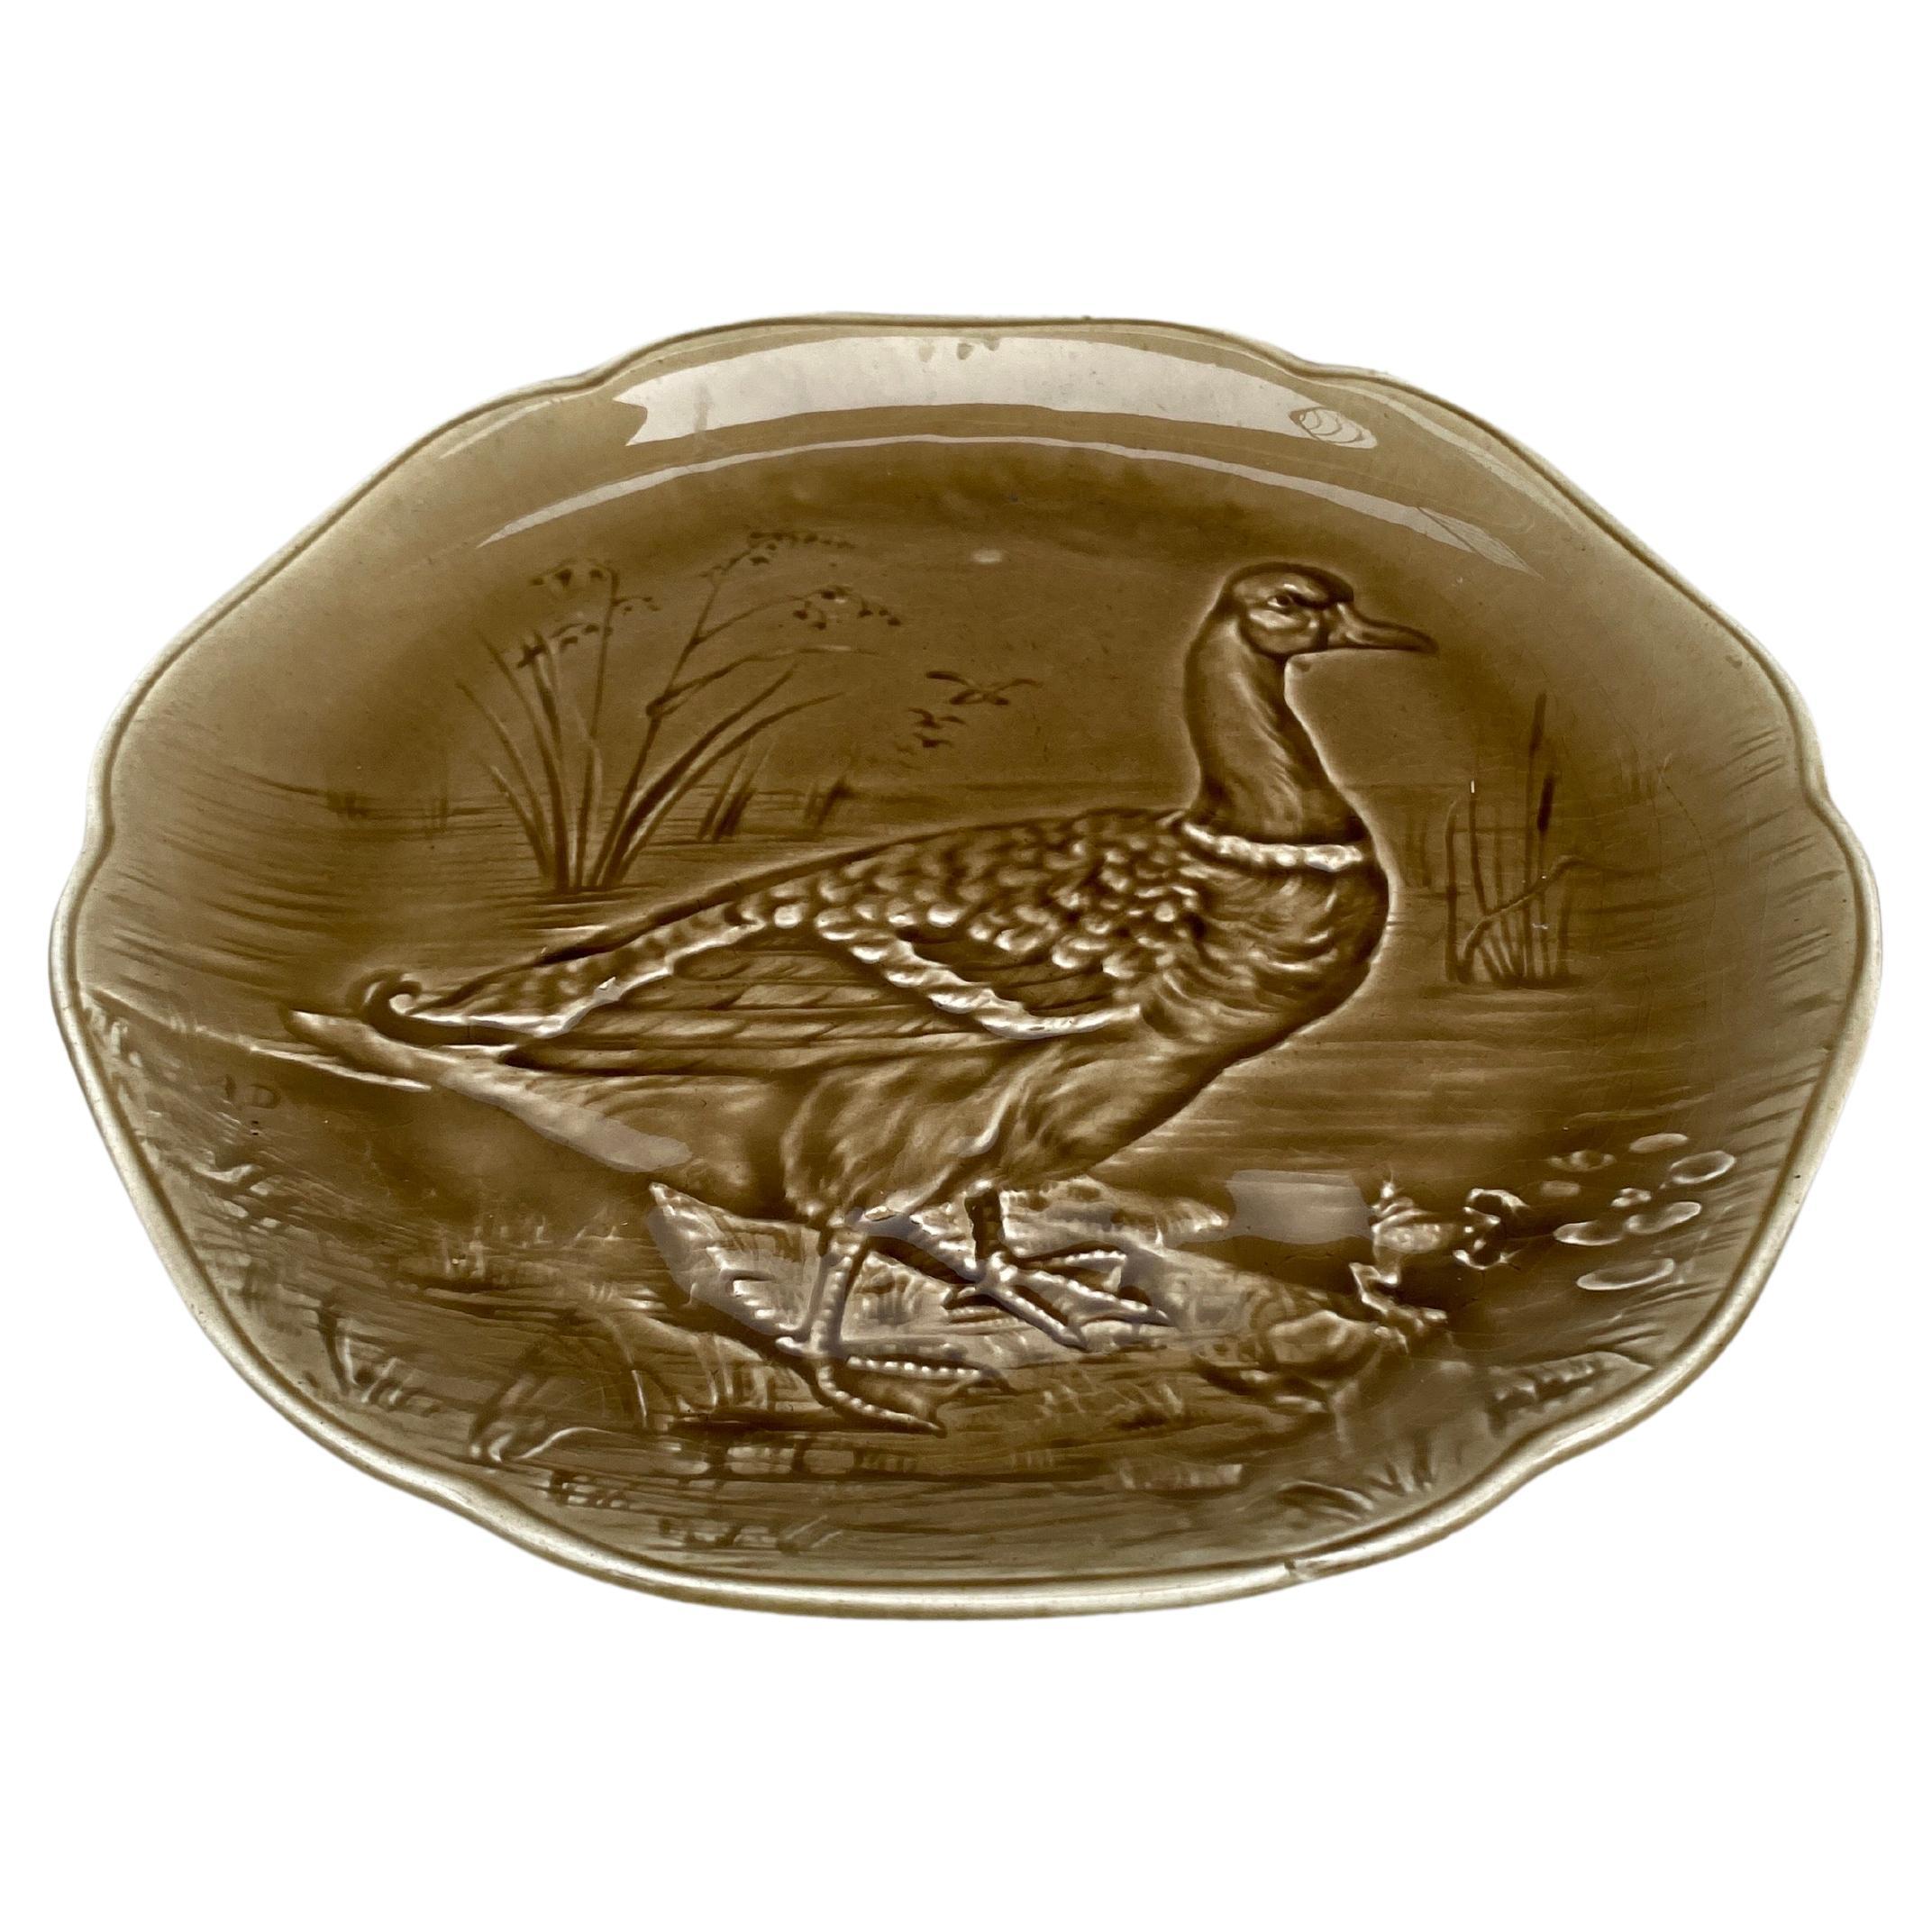 Assiette à canard colvert en majolique du XIXe siècle Hippolyte Boulenger Choisy-le-Roi, vers 1890.
La manufacture de Choisy-le-Roi était l'une des plus importantes à la fin du 19ème siècle, elle produisait des céramiques de très haute qualité de